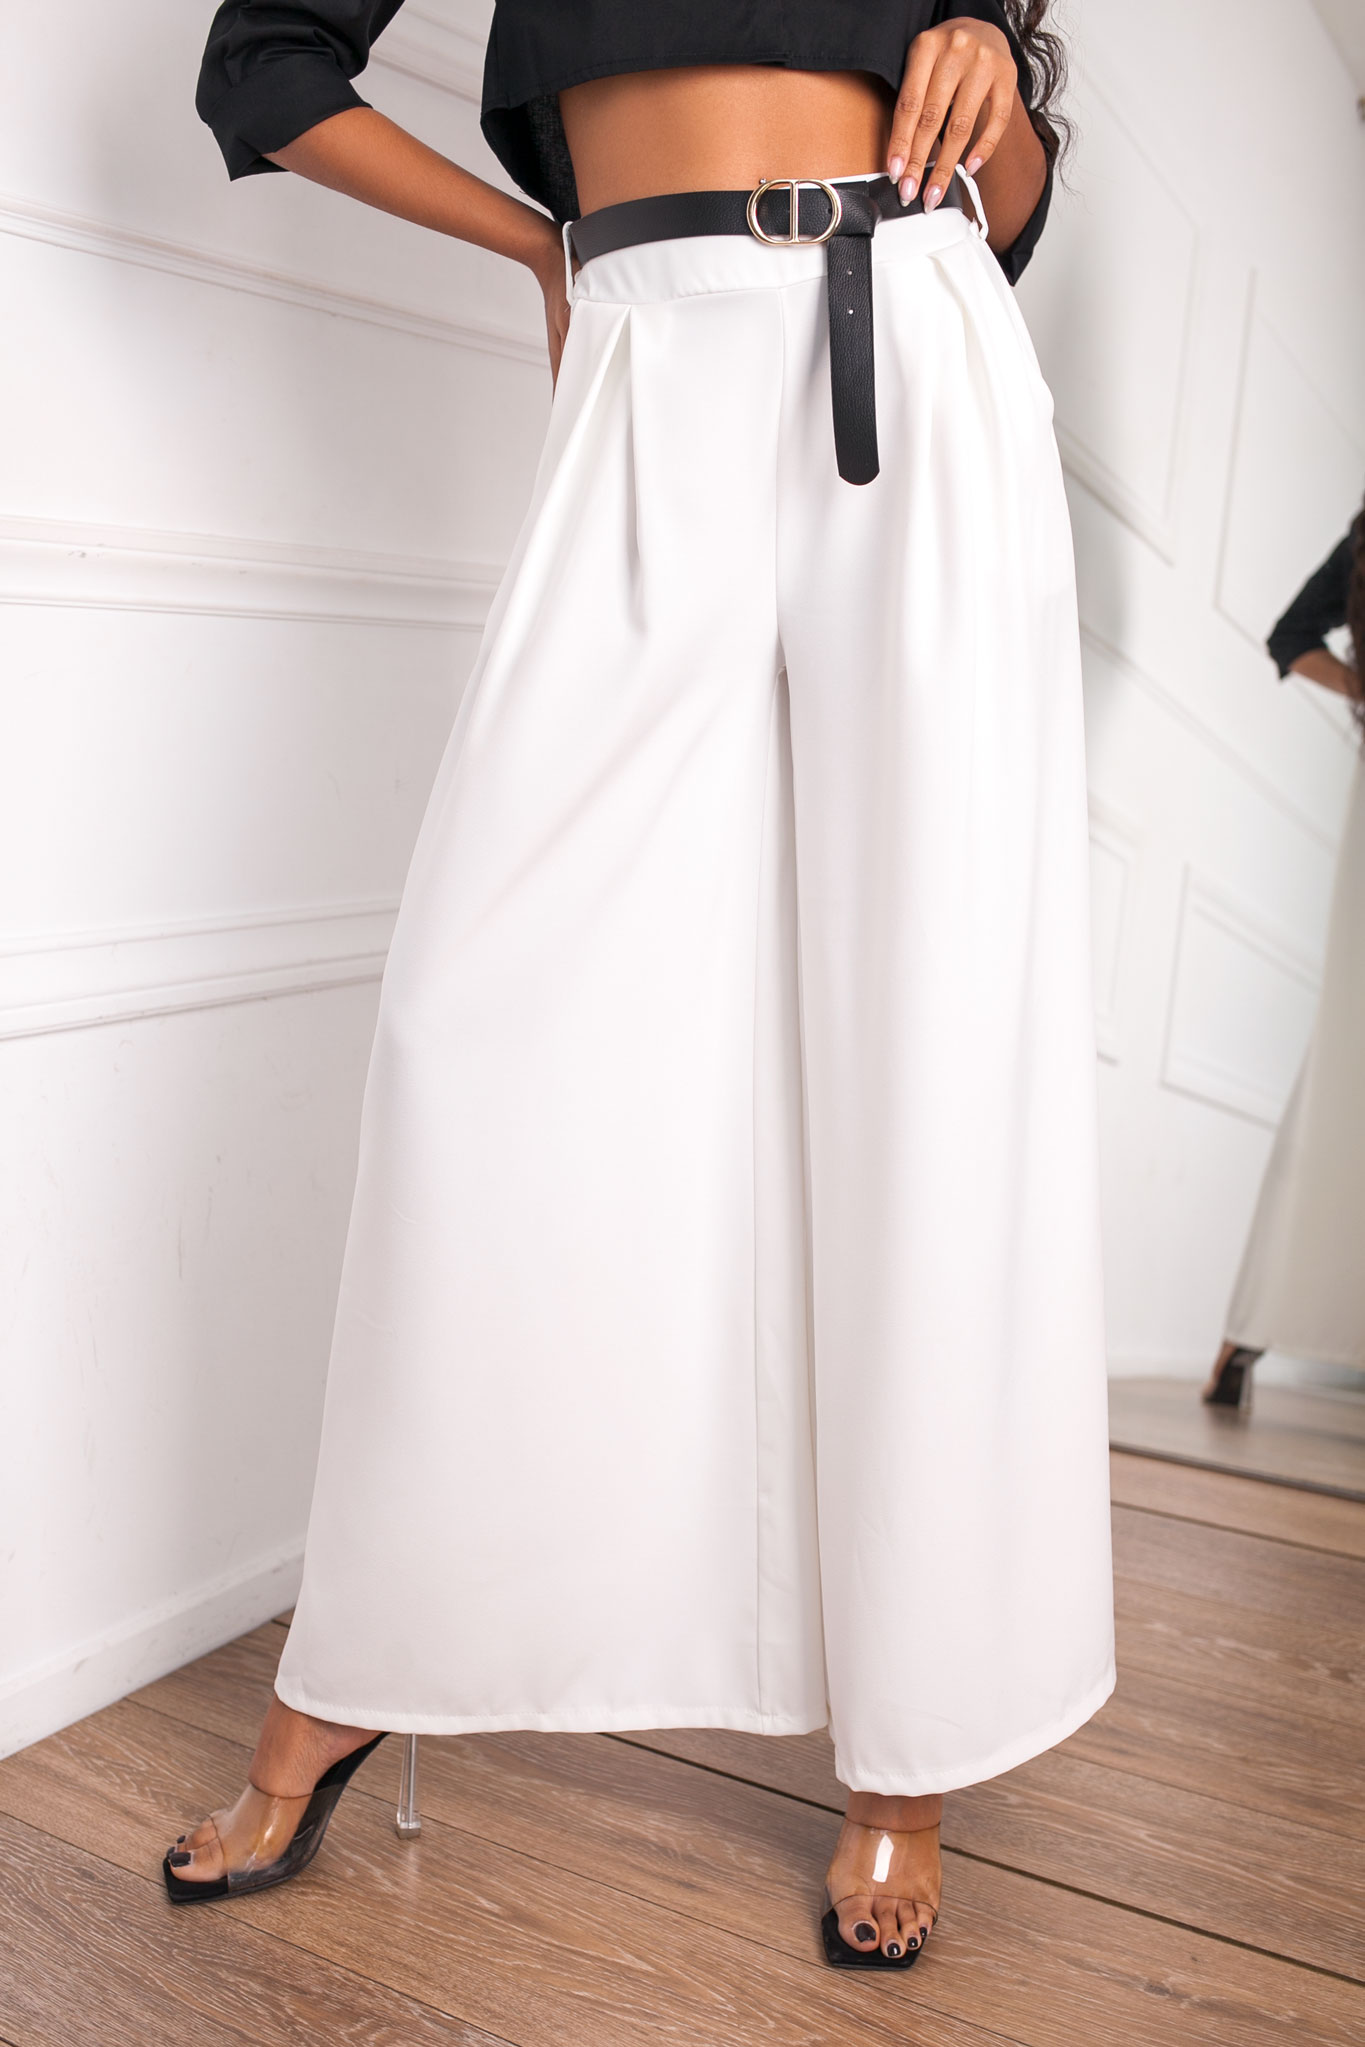 ΝΕΕΣ ΑΦΙΞΕΙΣ Elysee υφασμάτινο παντελόνι με ζώνη λευκό